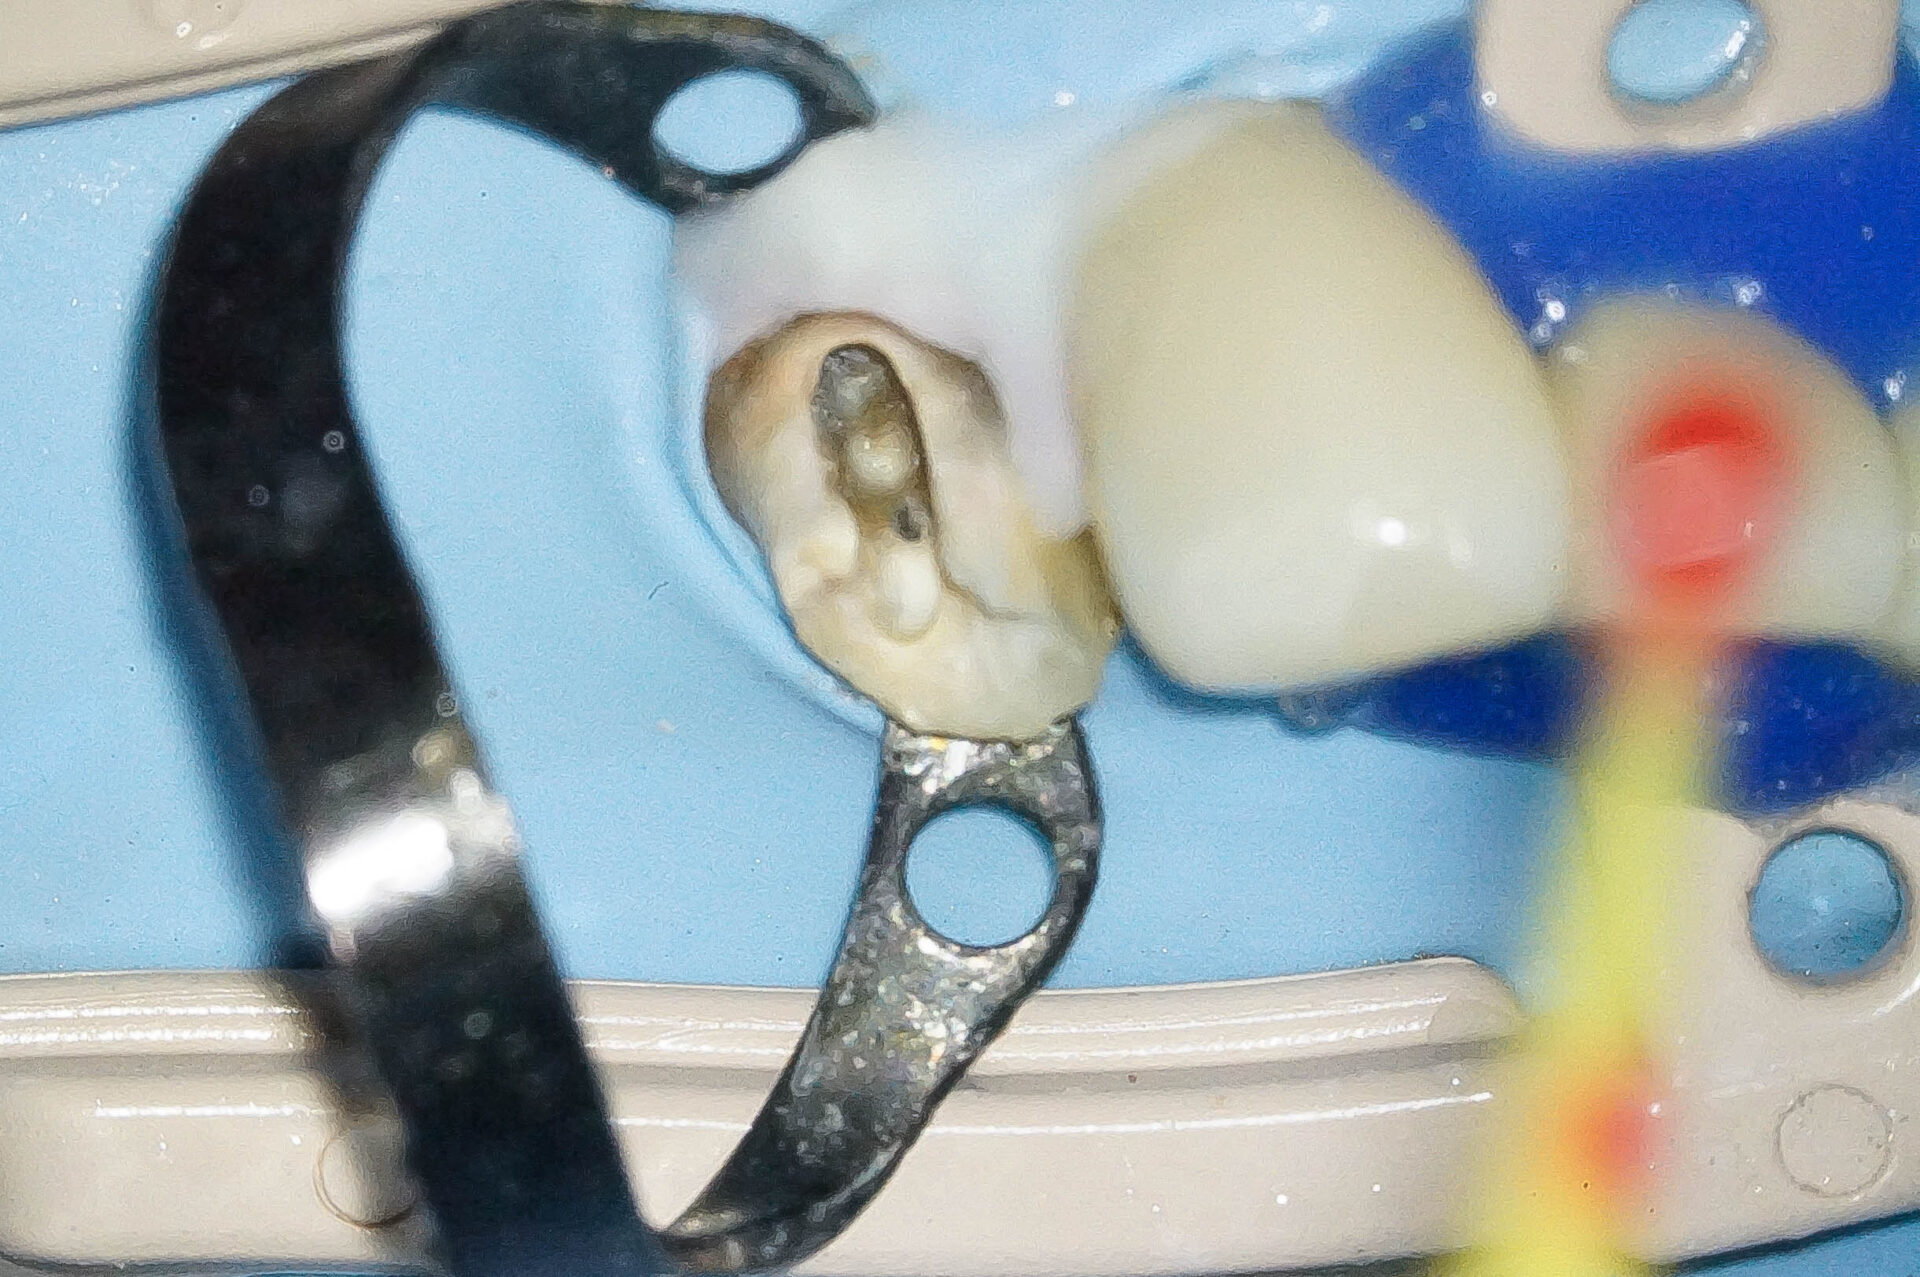 精密根管治療にて抜歯を回避した症例 3治療方法06